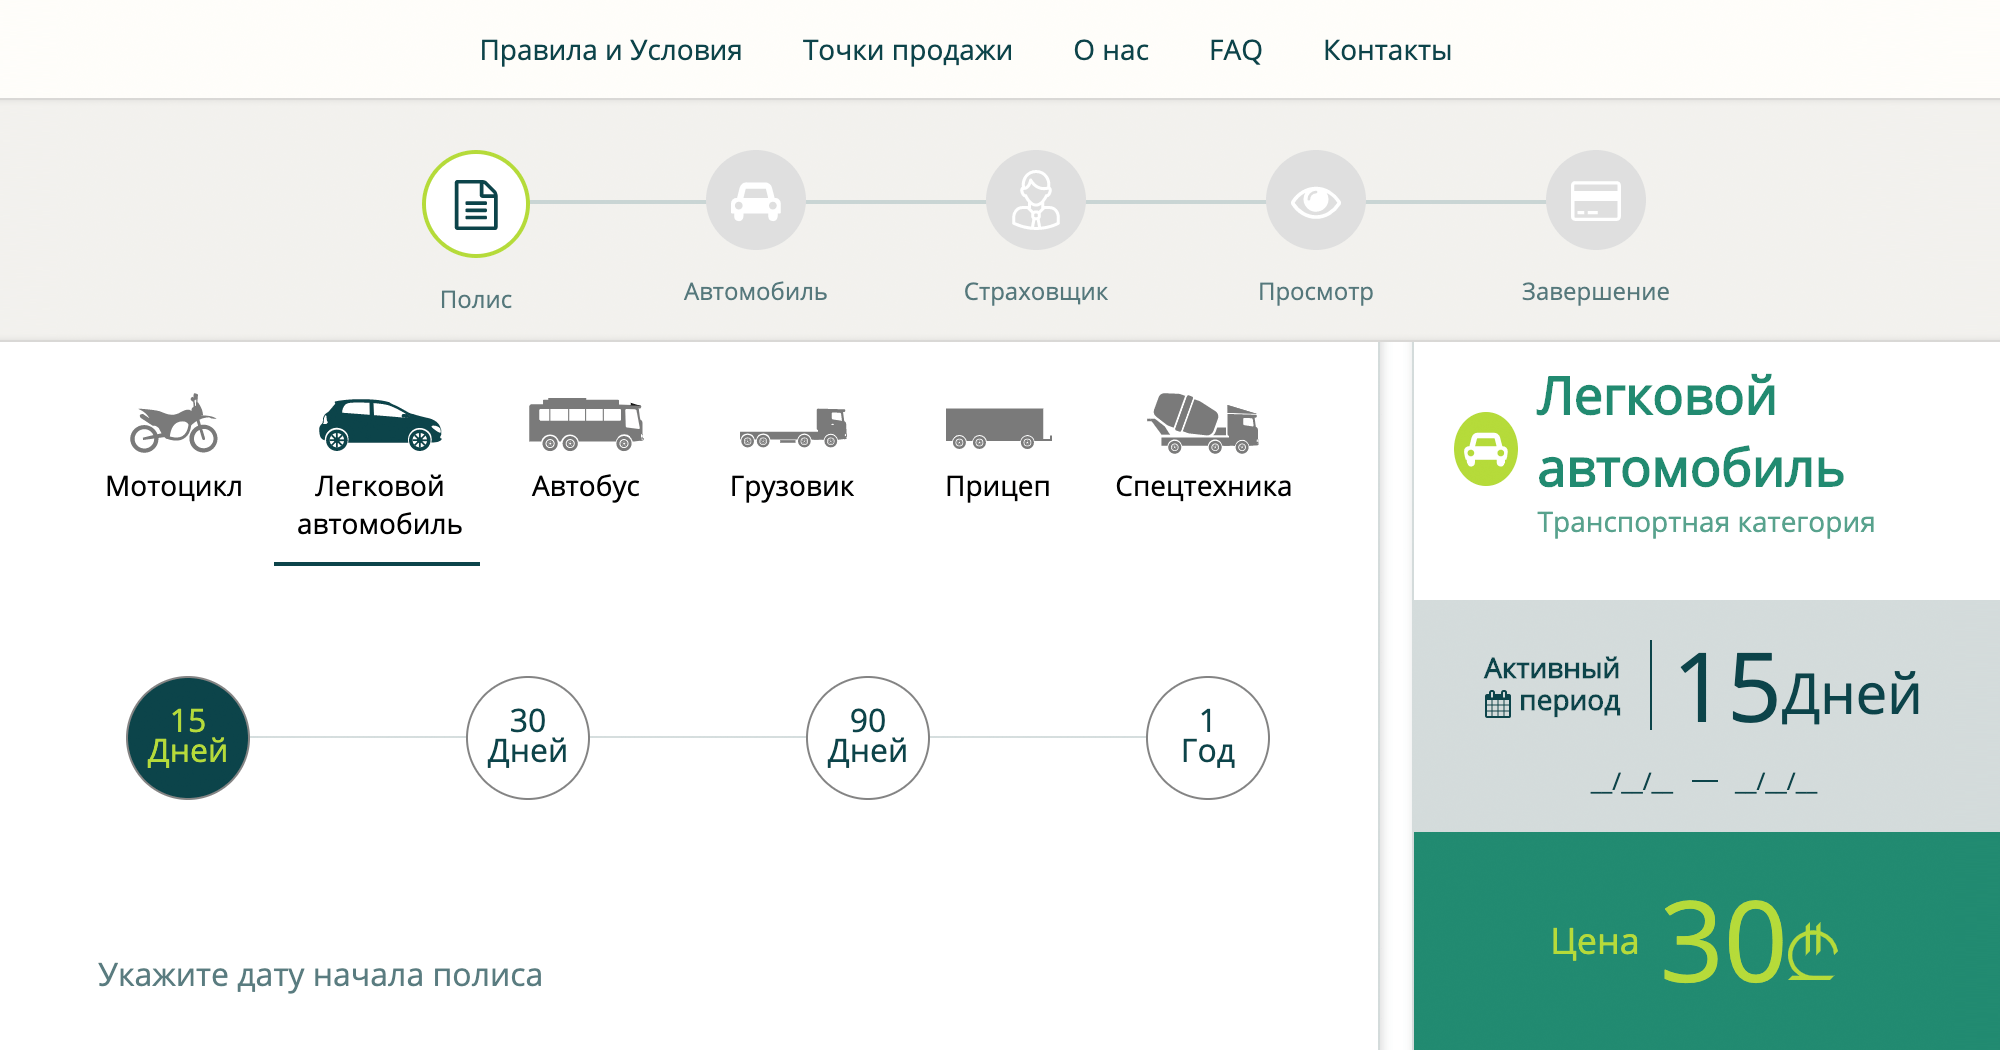 При покупке грузинской страховки можно выбрать русский язык, так что заполнить регистрационную форму очень легко